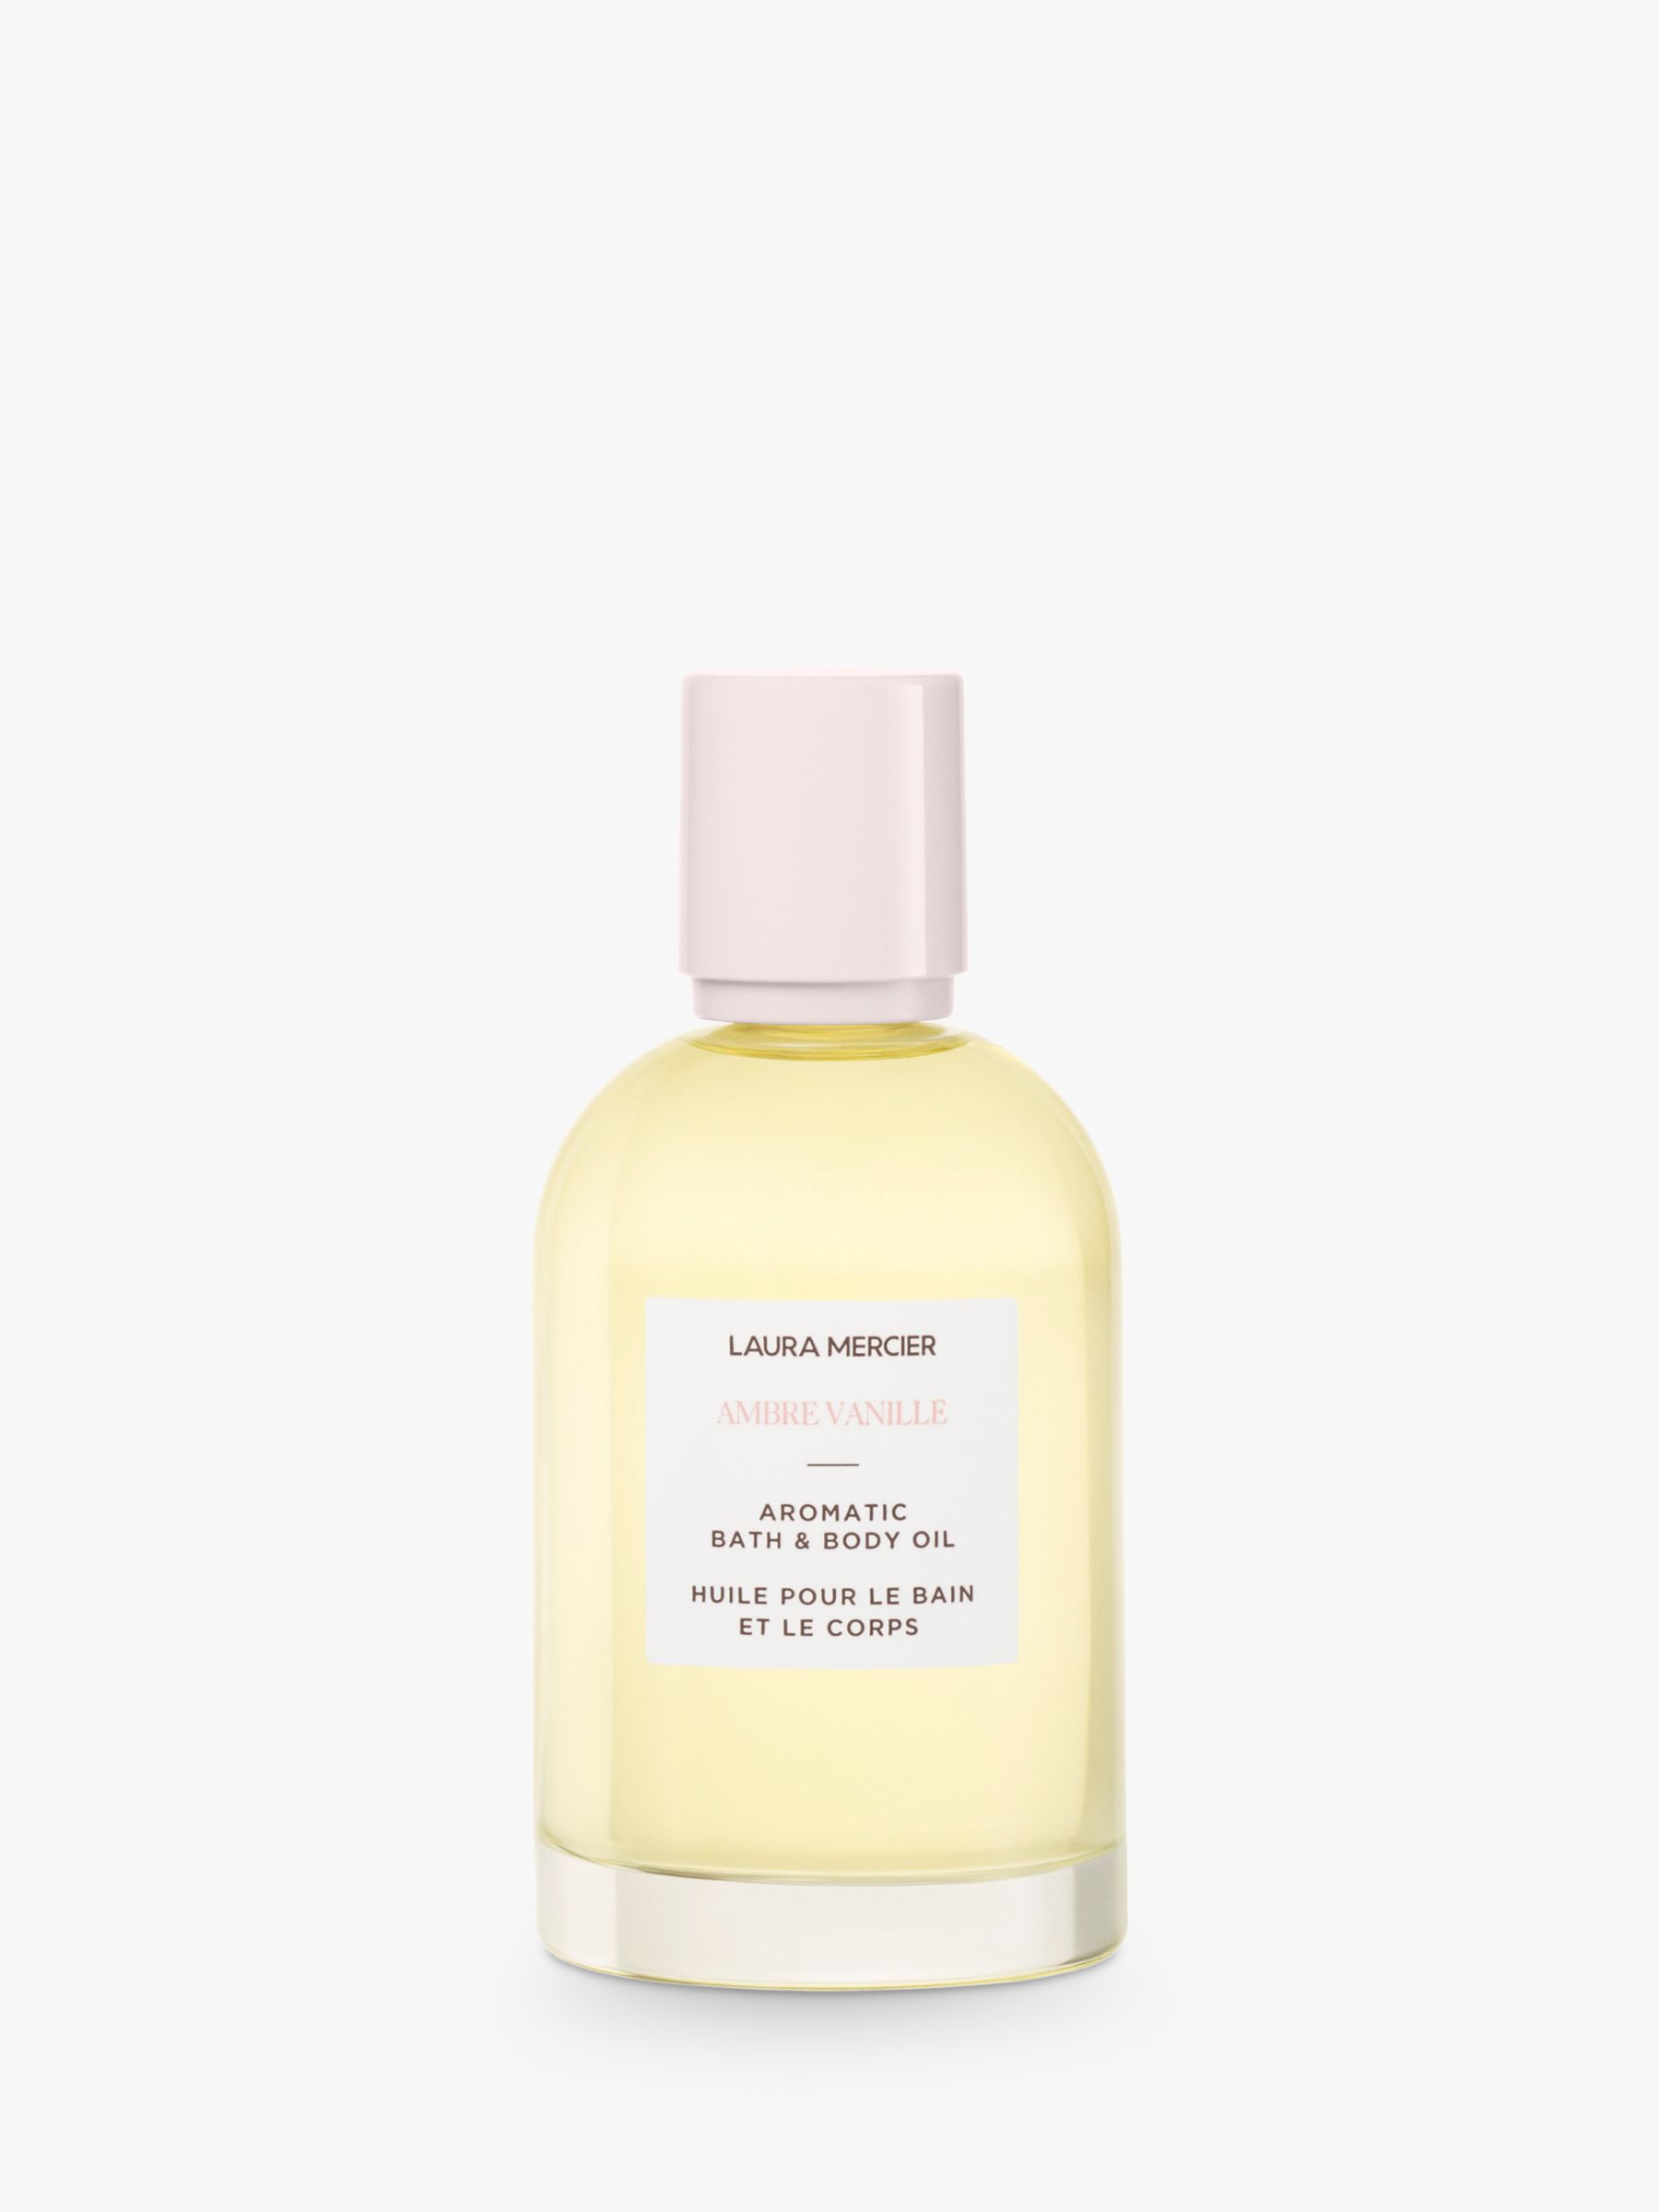 Laura Mercier Ambre Vanille Aromatic Bath & Body Oil